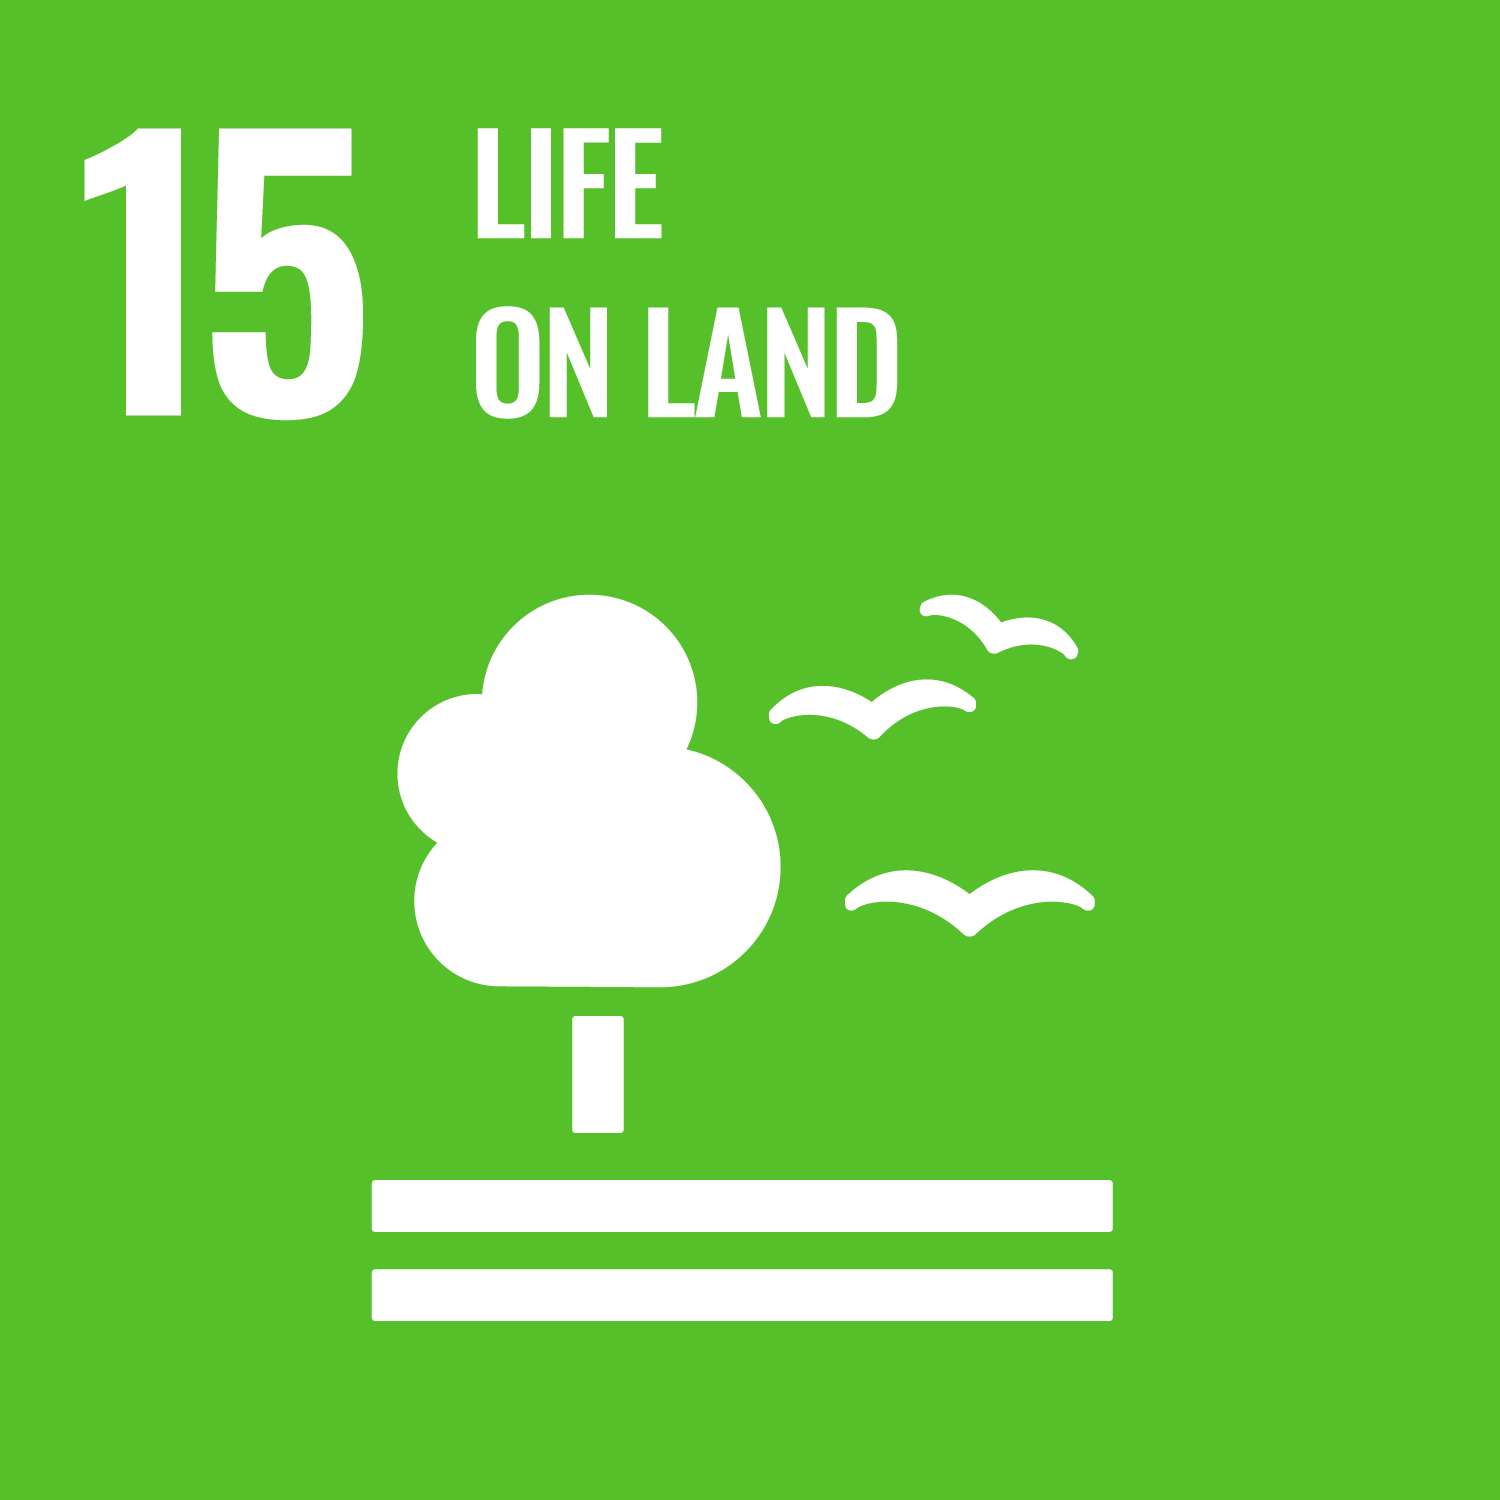 UN Sustainable Development Goal 15: Life on Land